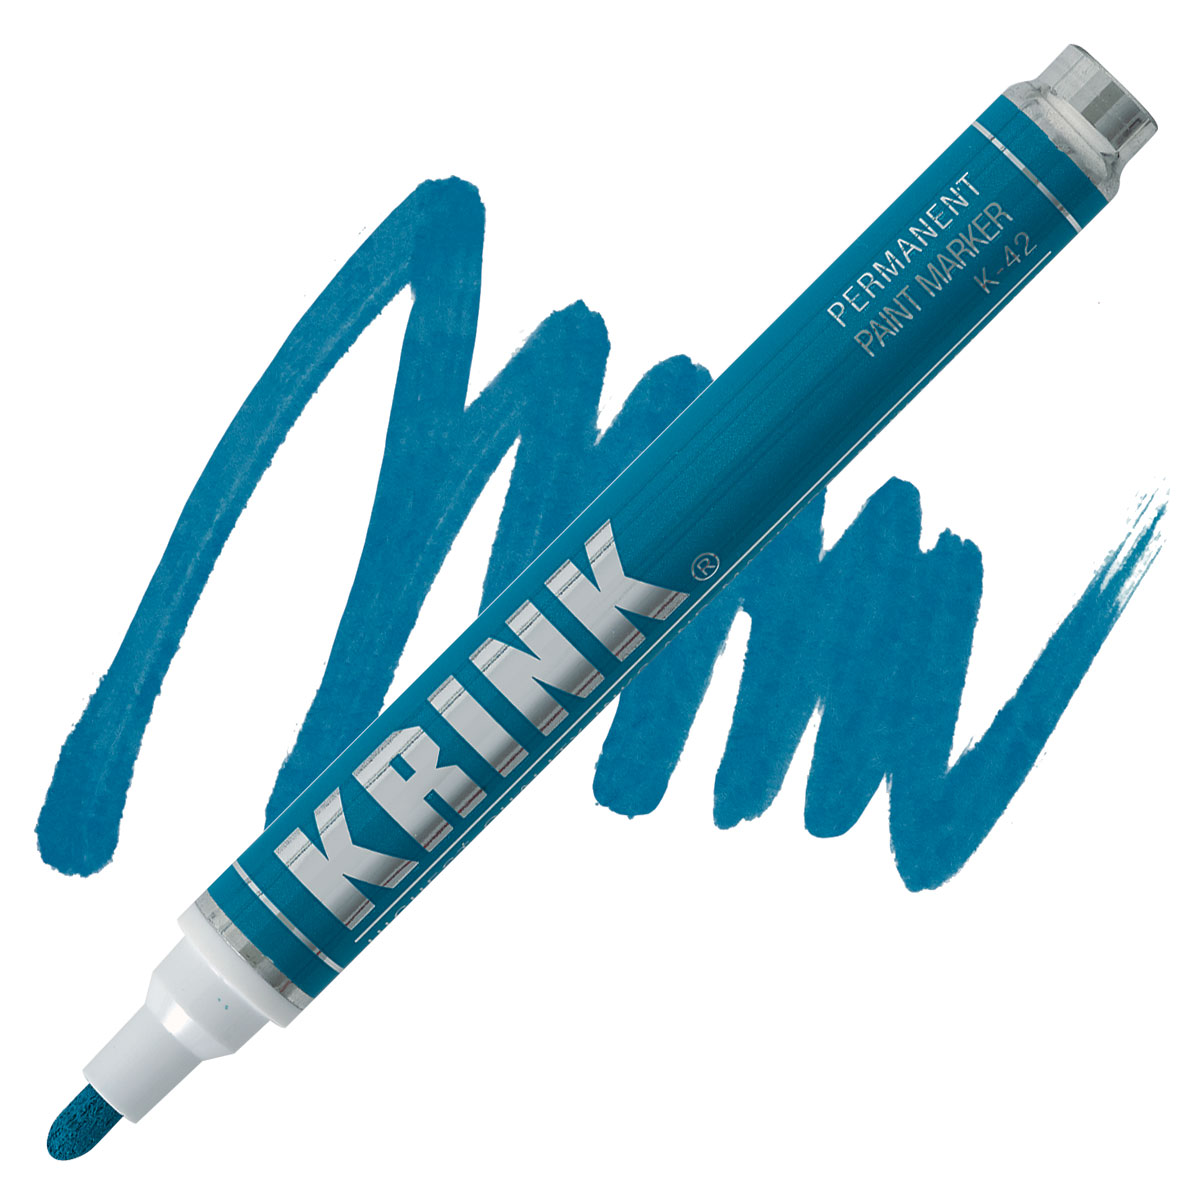 KRINK K-42 Paint Marker - Set of 12